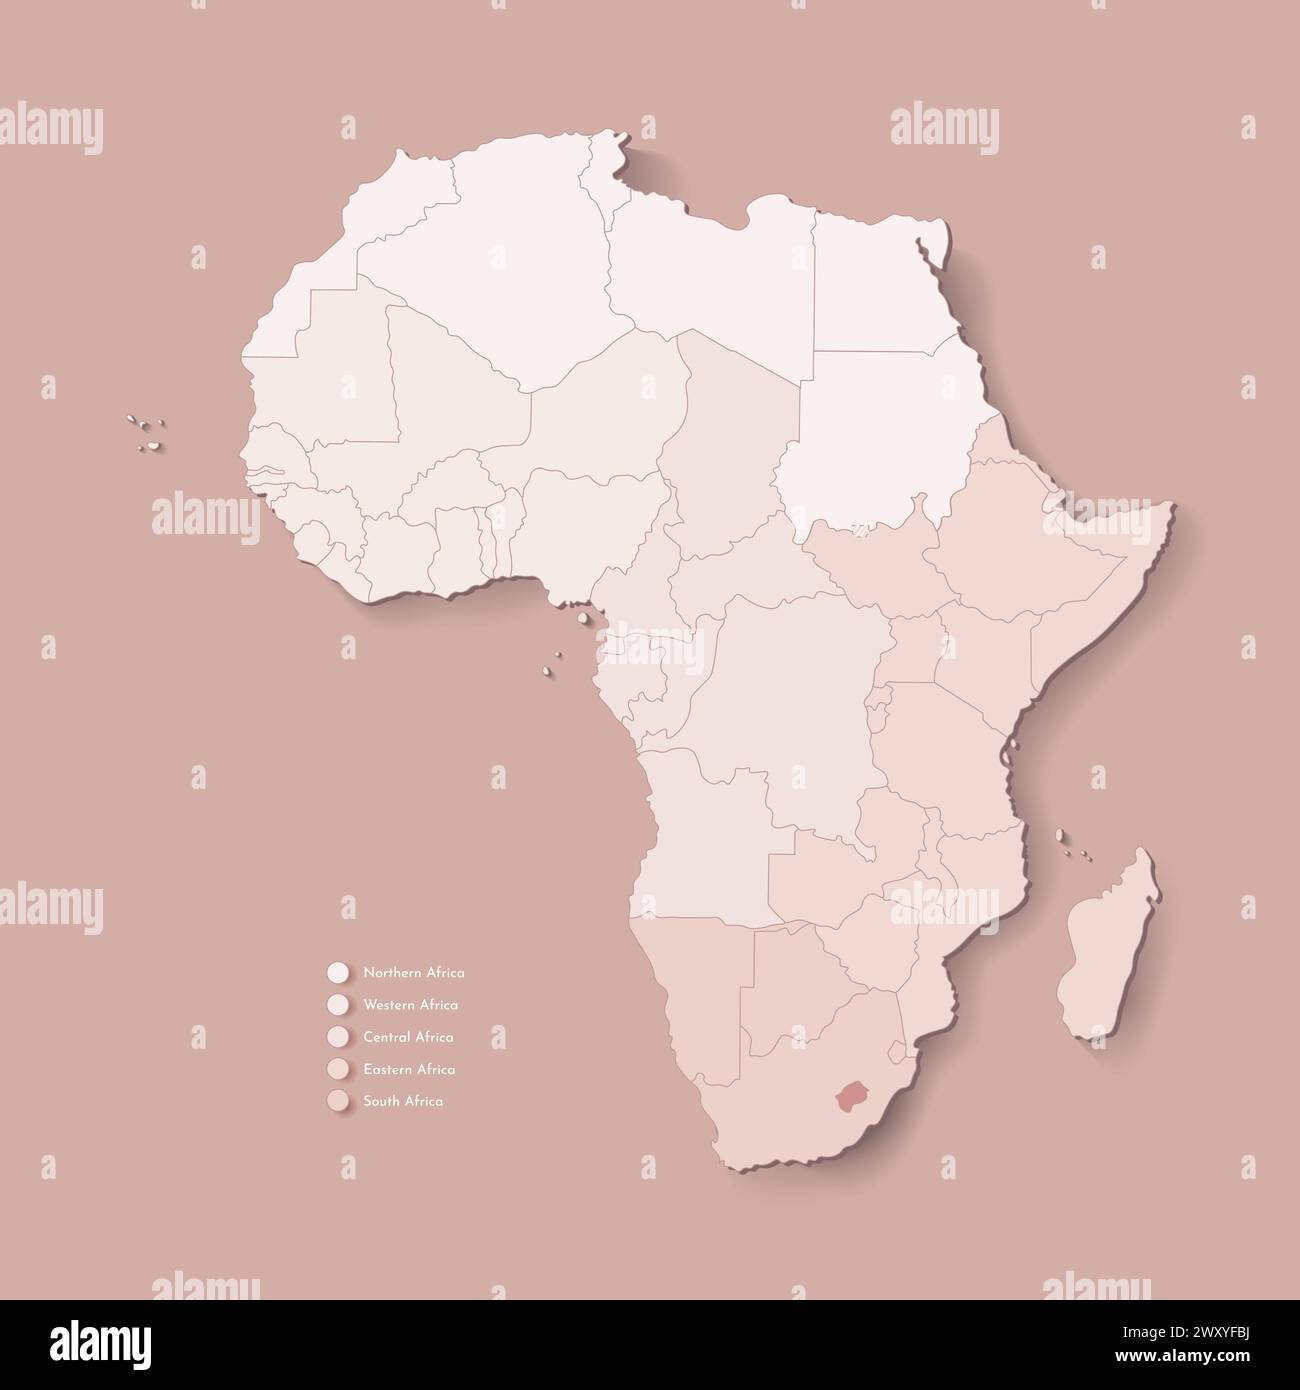 Illustrazione vettoriale con continente africano con confini di tutti gli stati e paese marcato Lesotho. Mappa politica in colori marroni con occidentale, sud AN Illustrazione Vettoriale